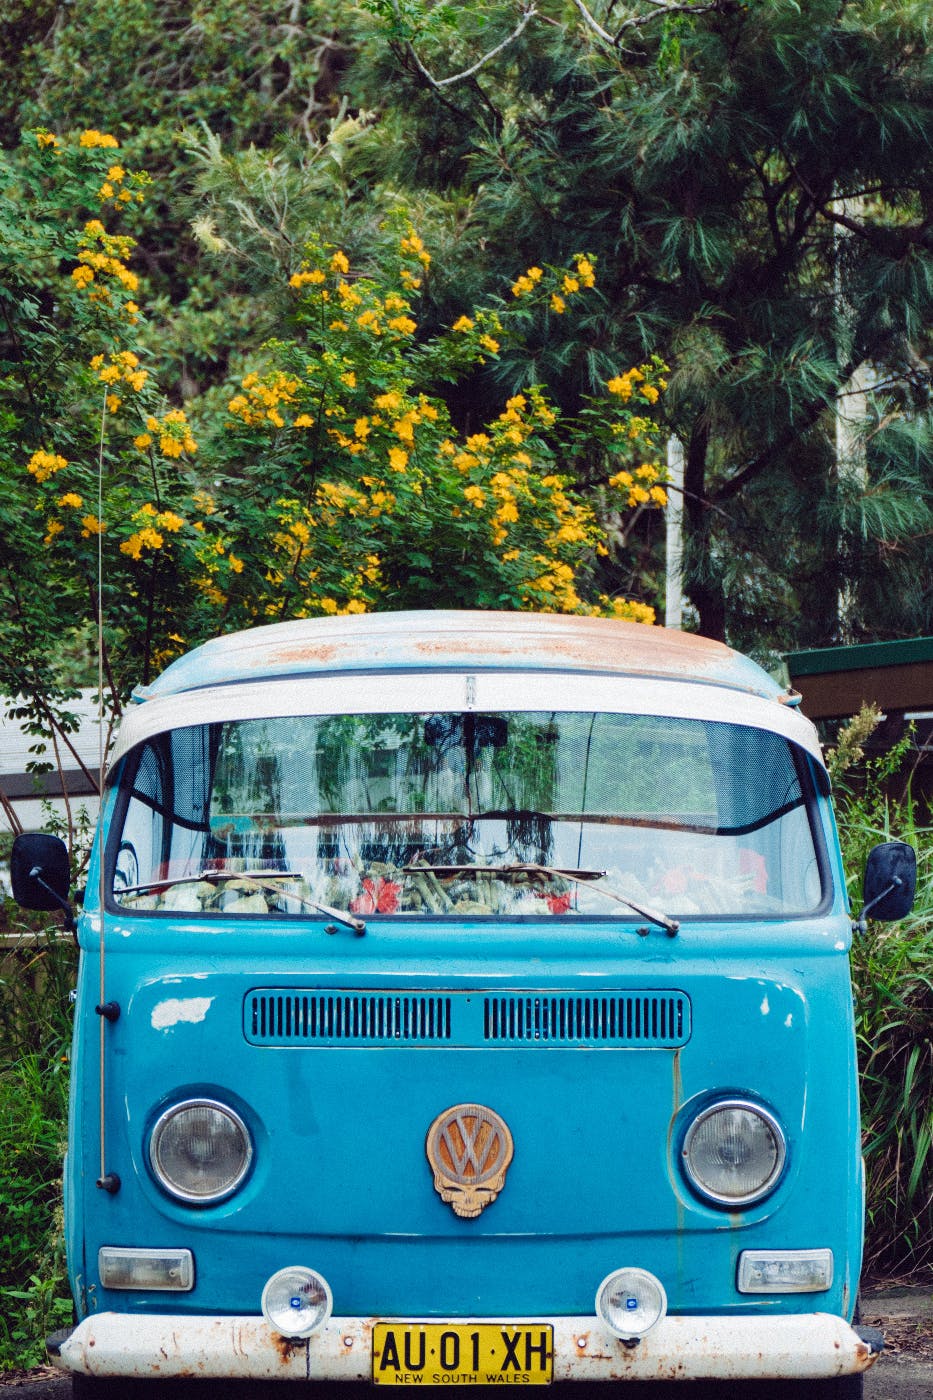 An original VW microbus